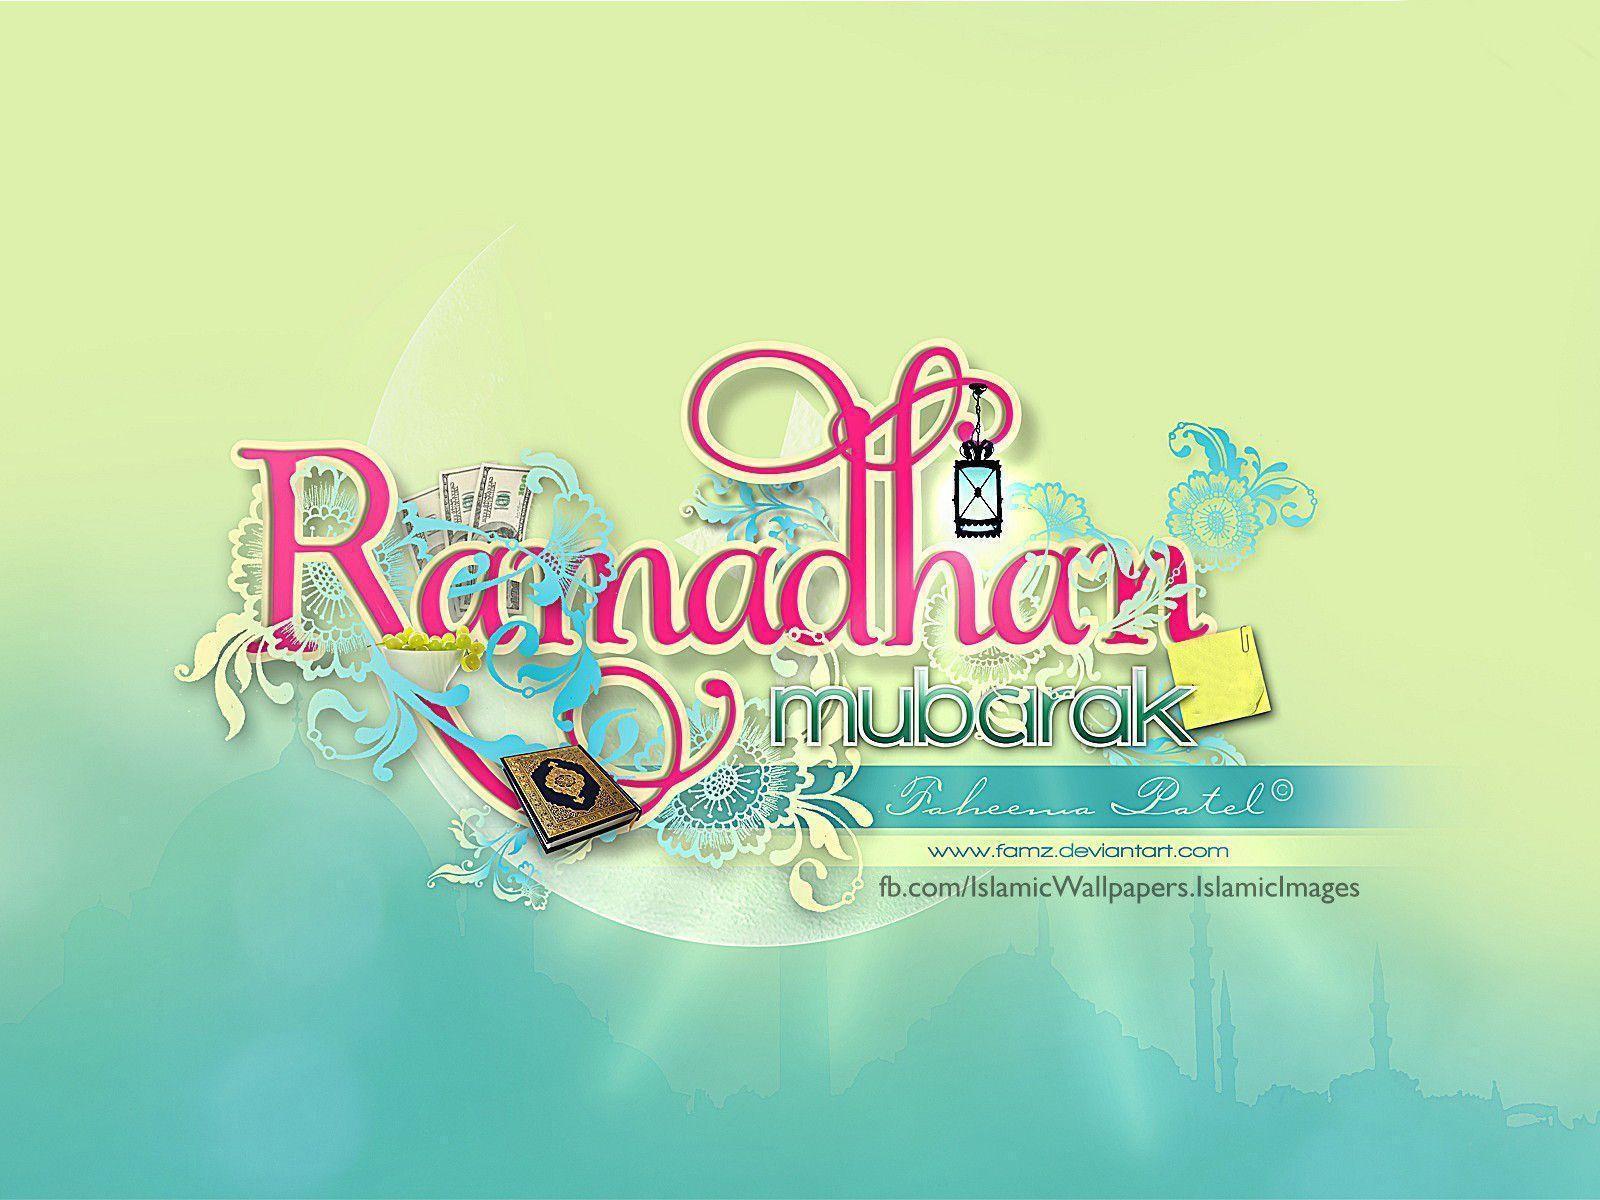 Ramadan wallpaper 2014. Full HD Wallpaper